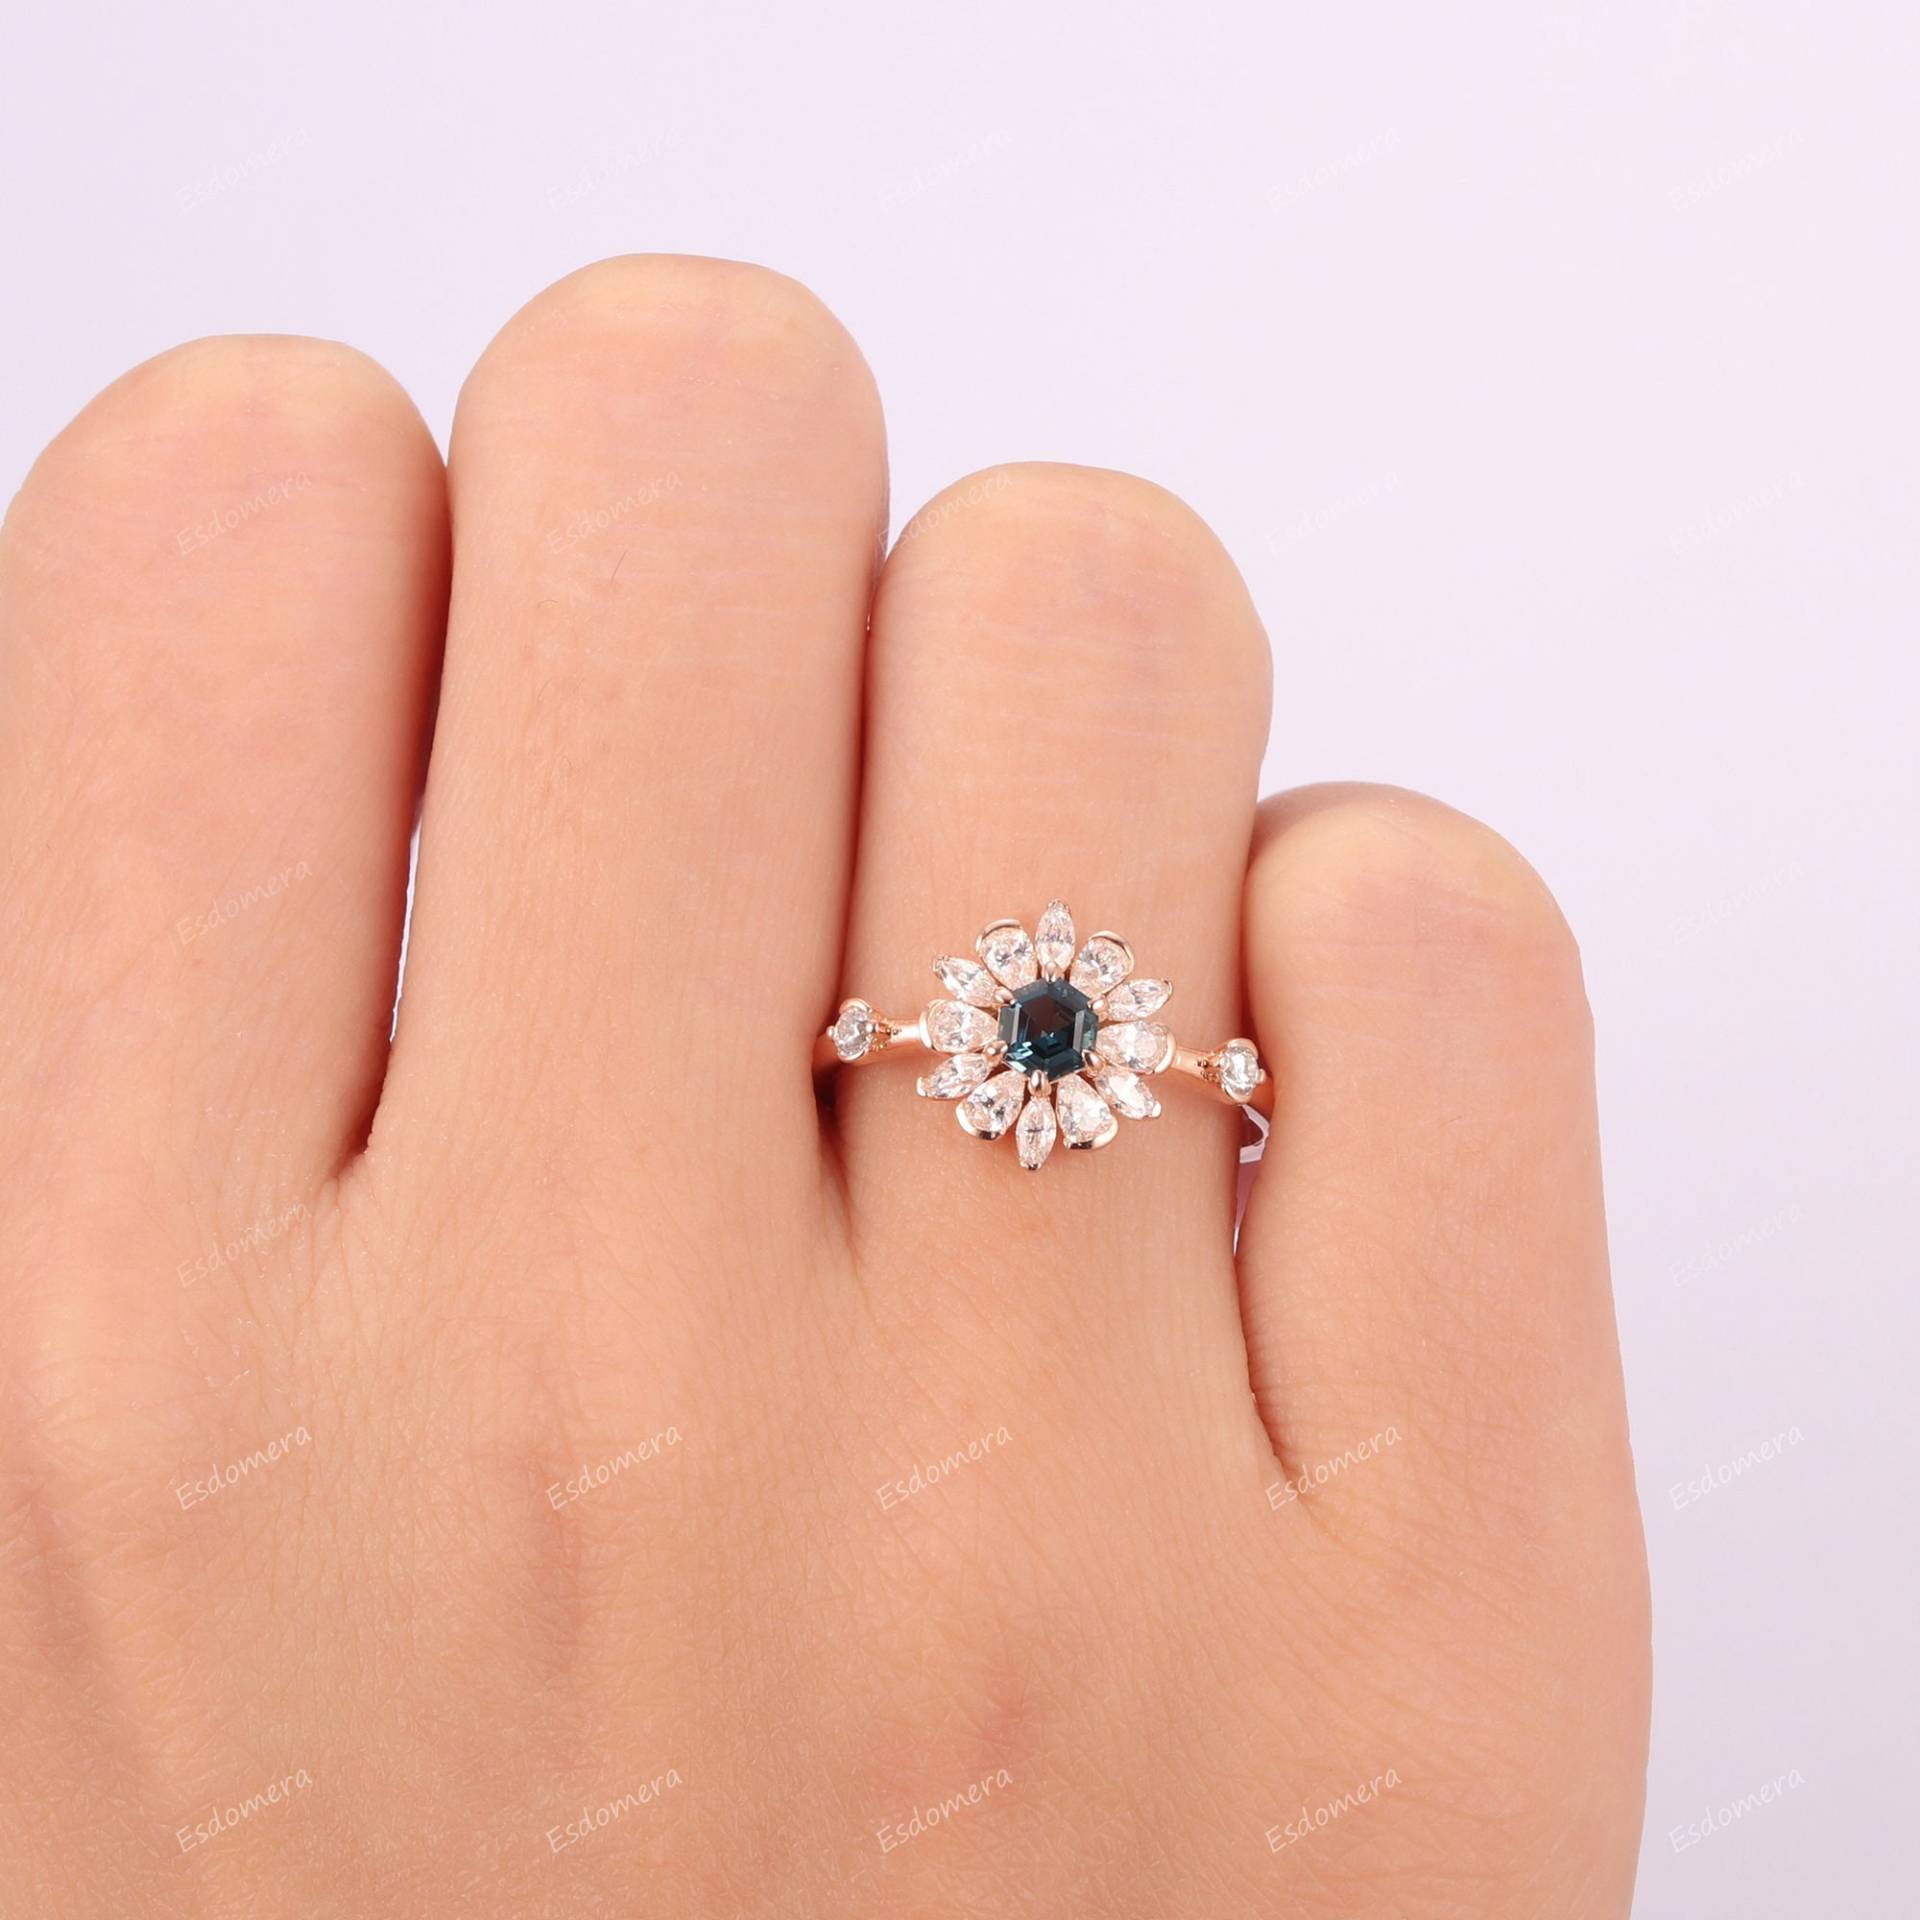 Floral Halo Ring Für Frauen, Hexagon Cut 4mm London Blautopas Verlobungsring, Vintage Braut Jahrestagsgeschenk, Topas Ehering von Esdomera